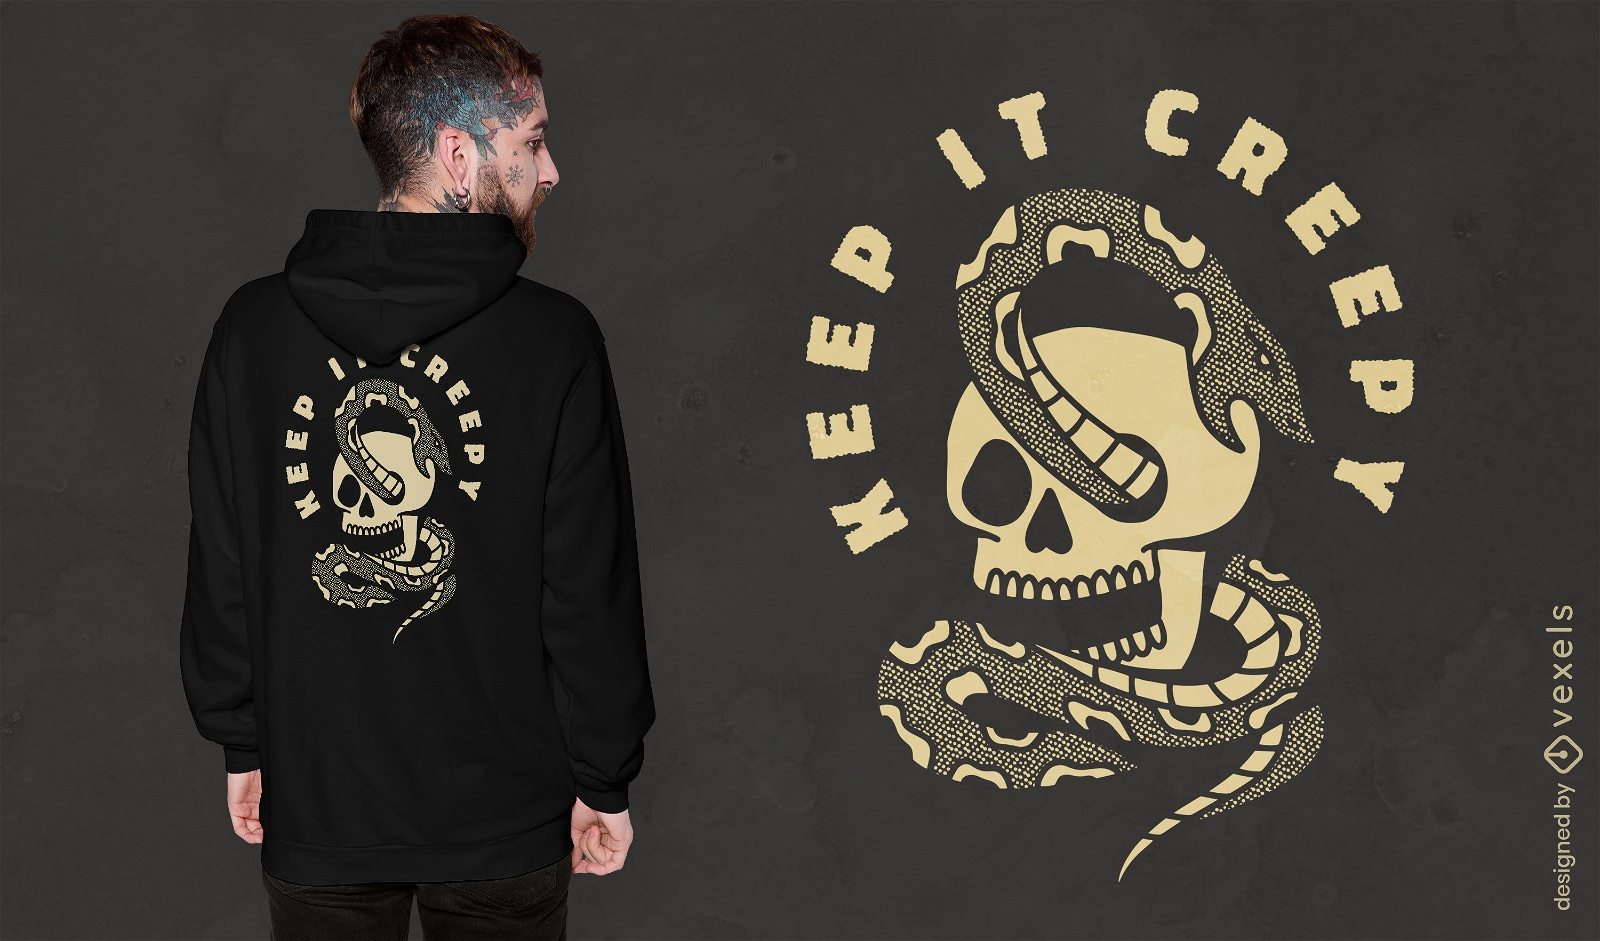 Creepy snake skull t-shirt design